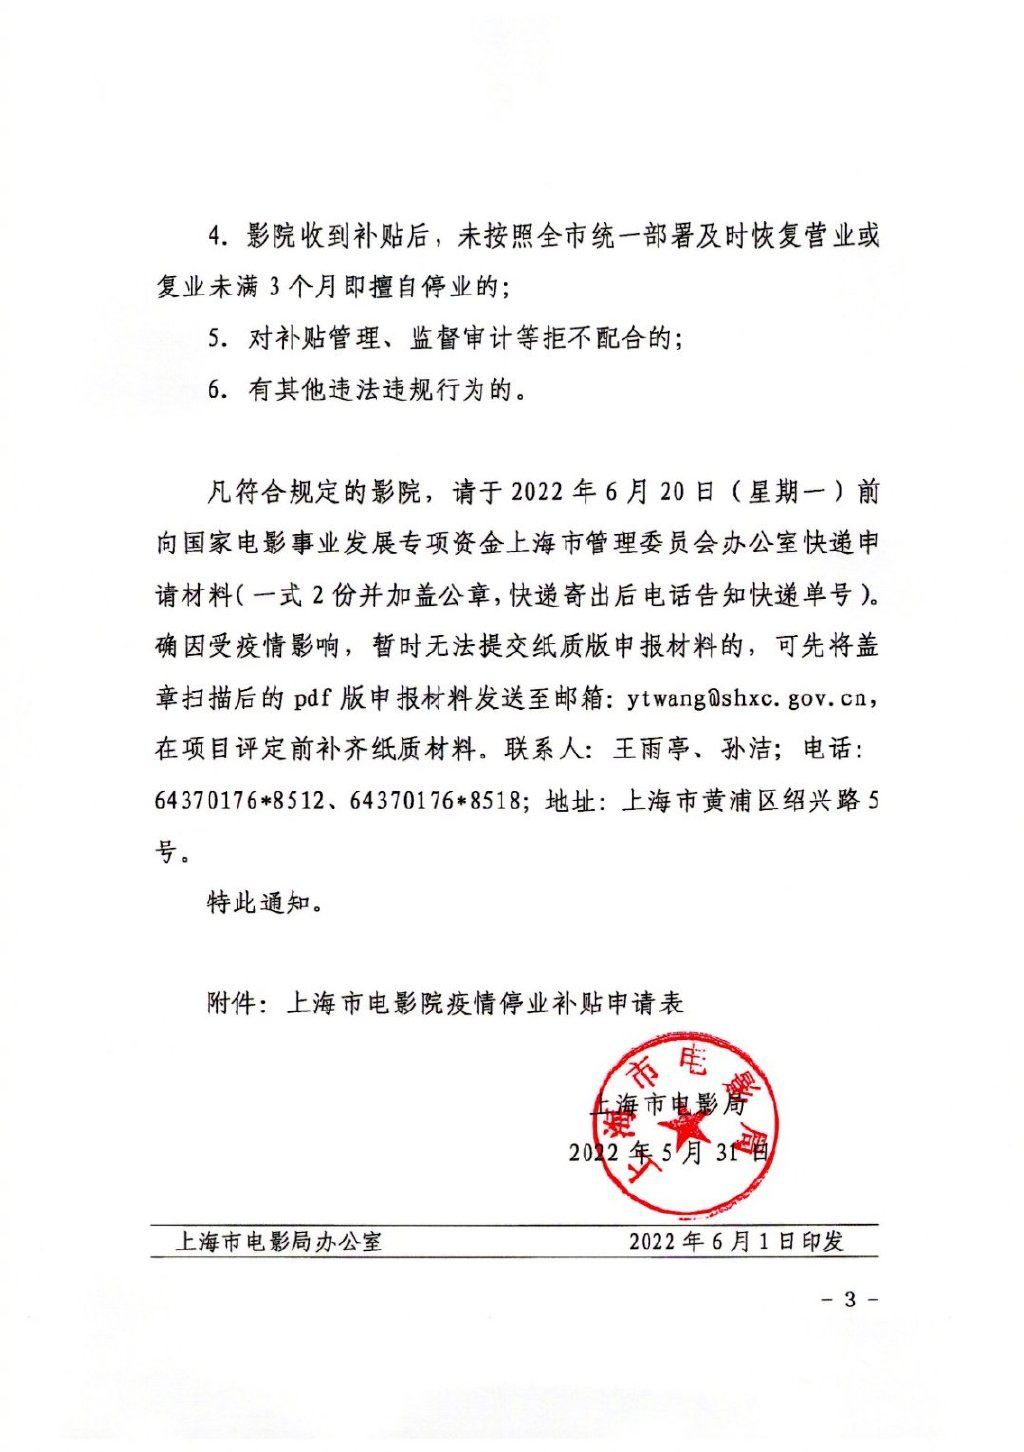 上海电影局发布通知：电影院可申请疫情停业补贴